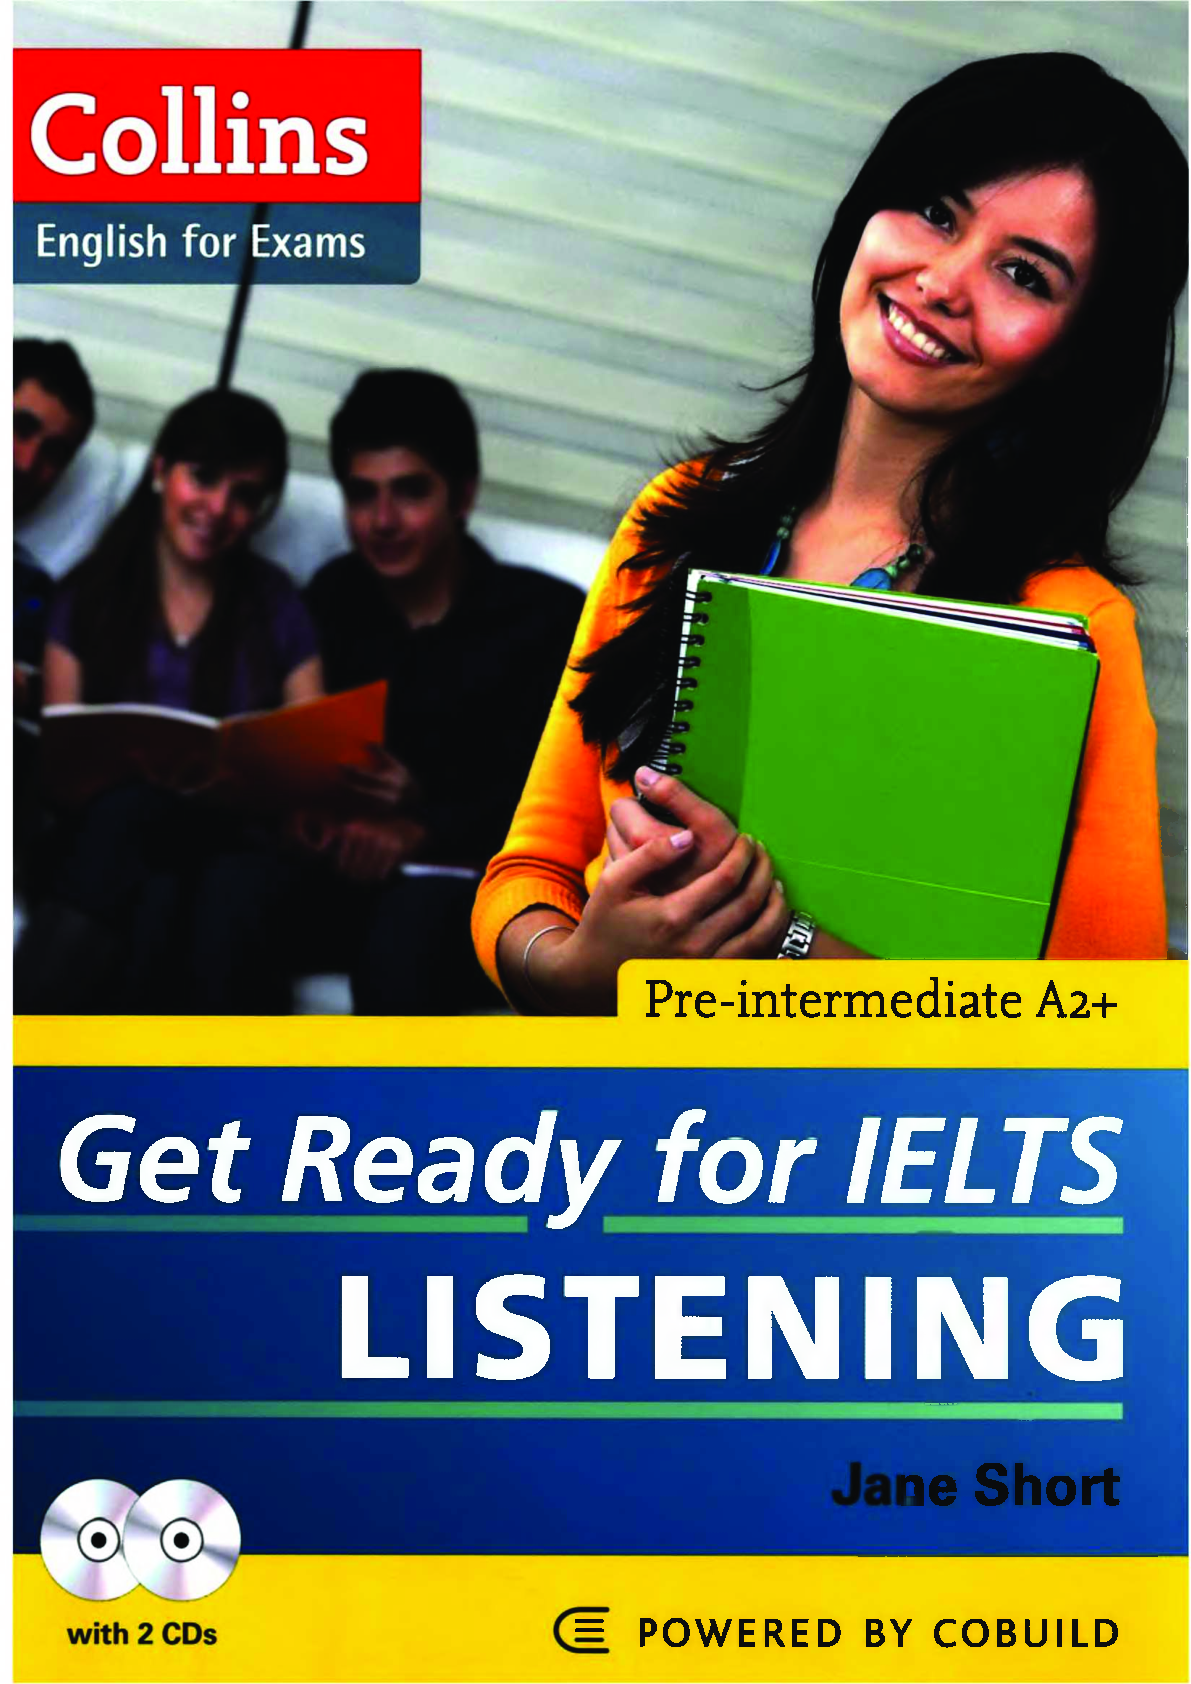 Sách Get Ready for IELTS Listening pdf | Xem online, tải PDF miễn phí (trang 1)